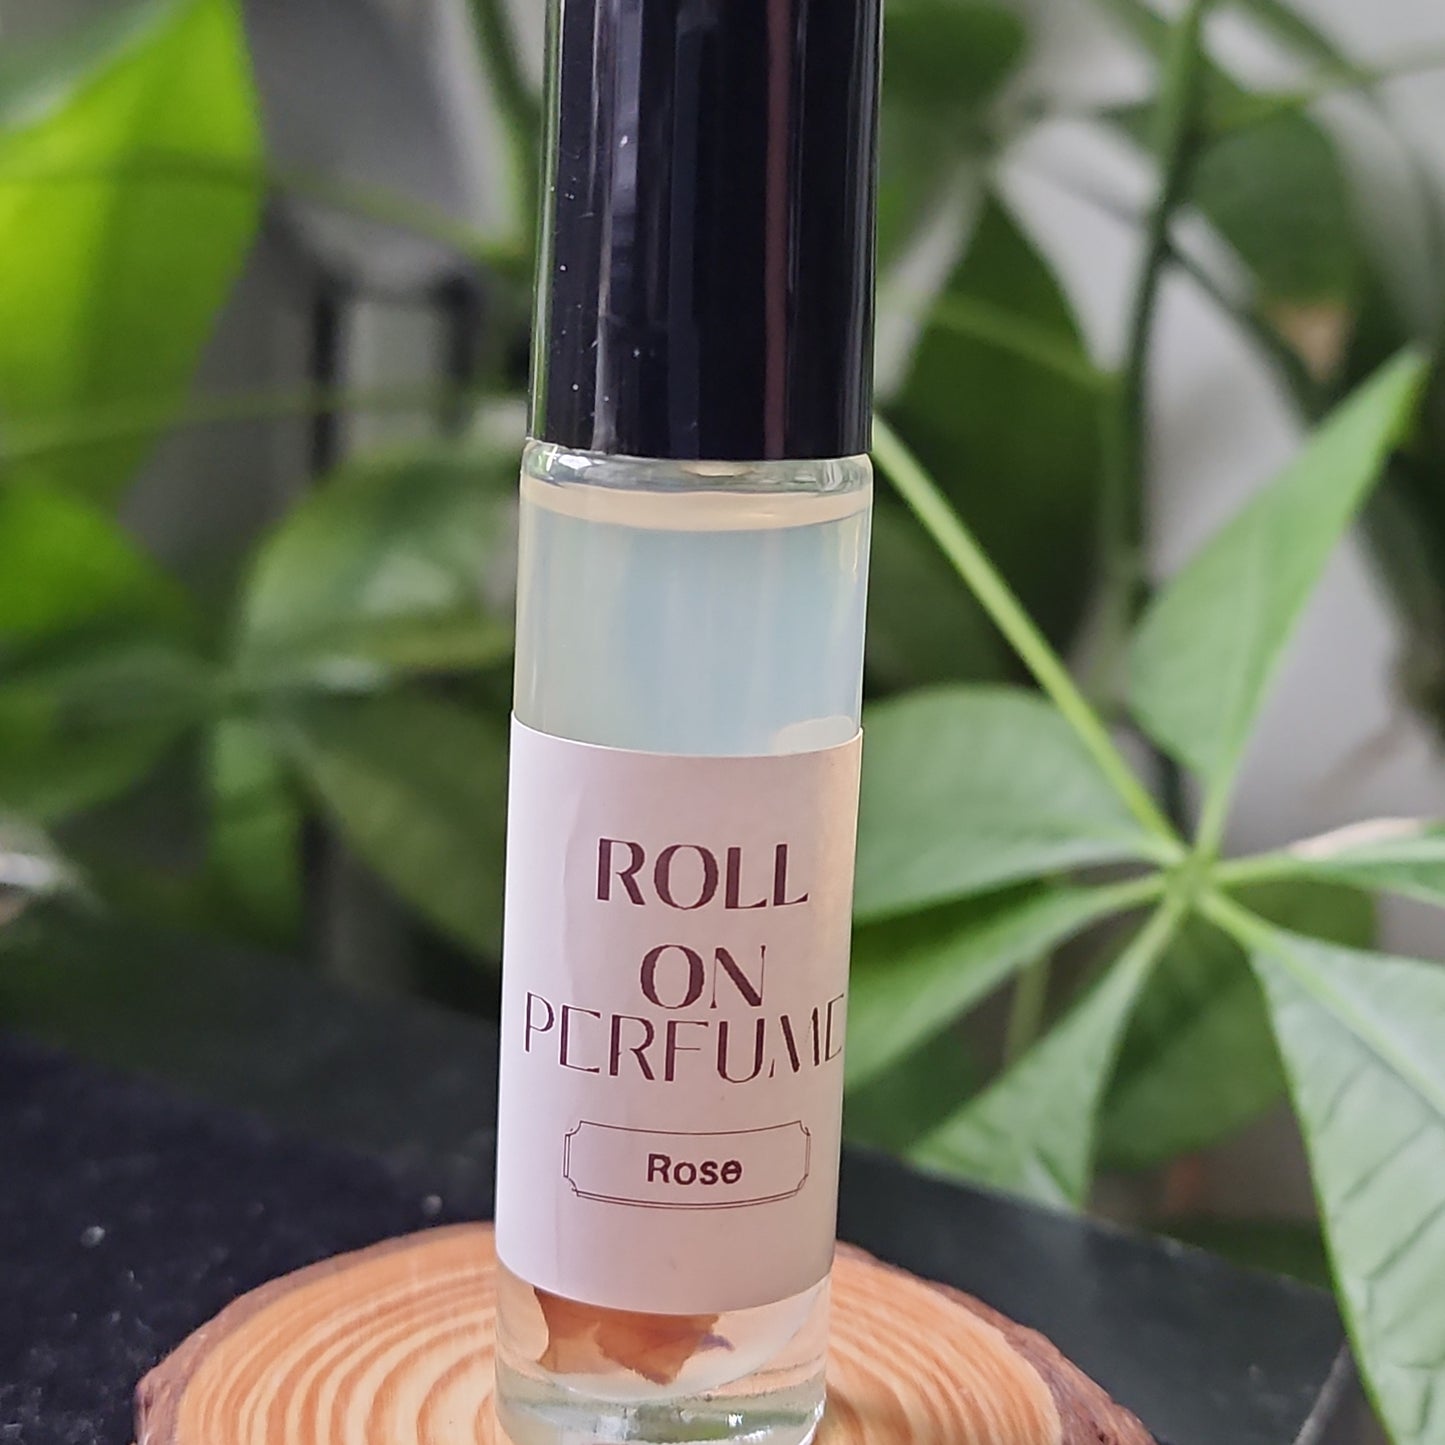 Roll on perfume